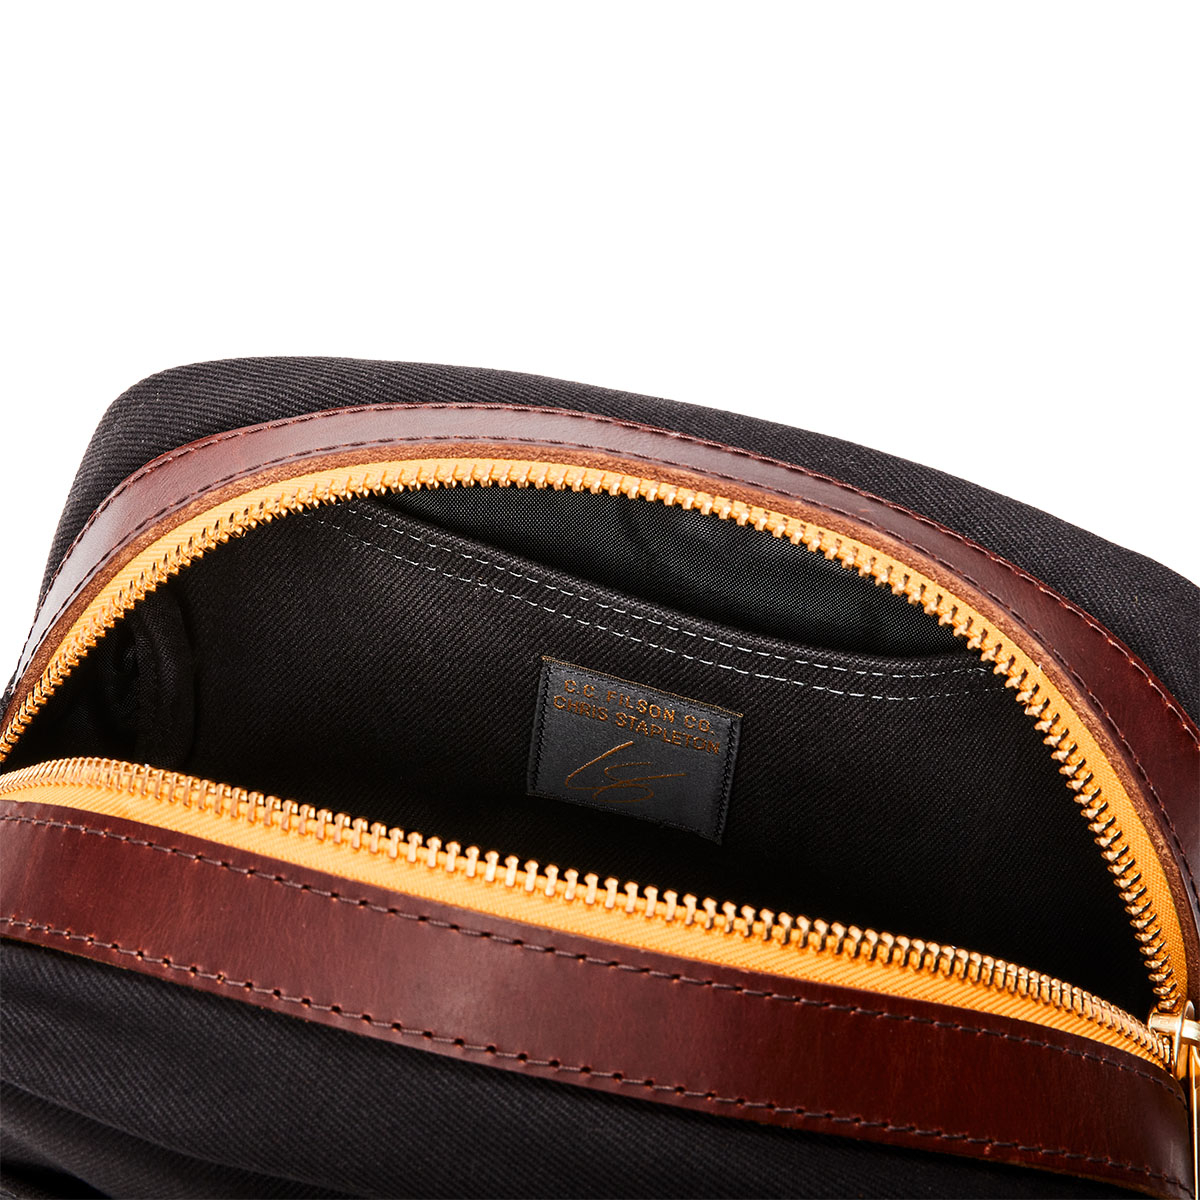 Filson Traveller Dopp Kit Stapleton Cinder colors for the fabric, zipper, and leather chosen by Chris Stapleton